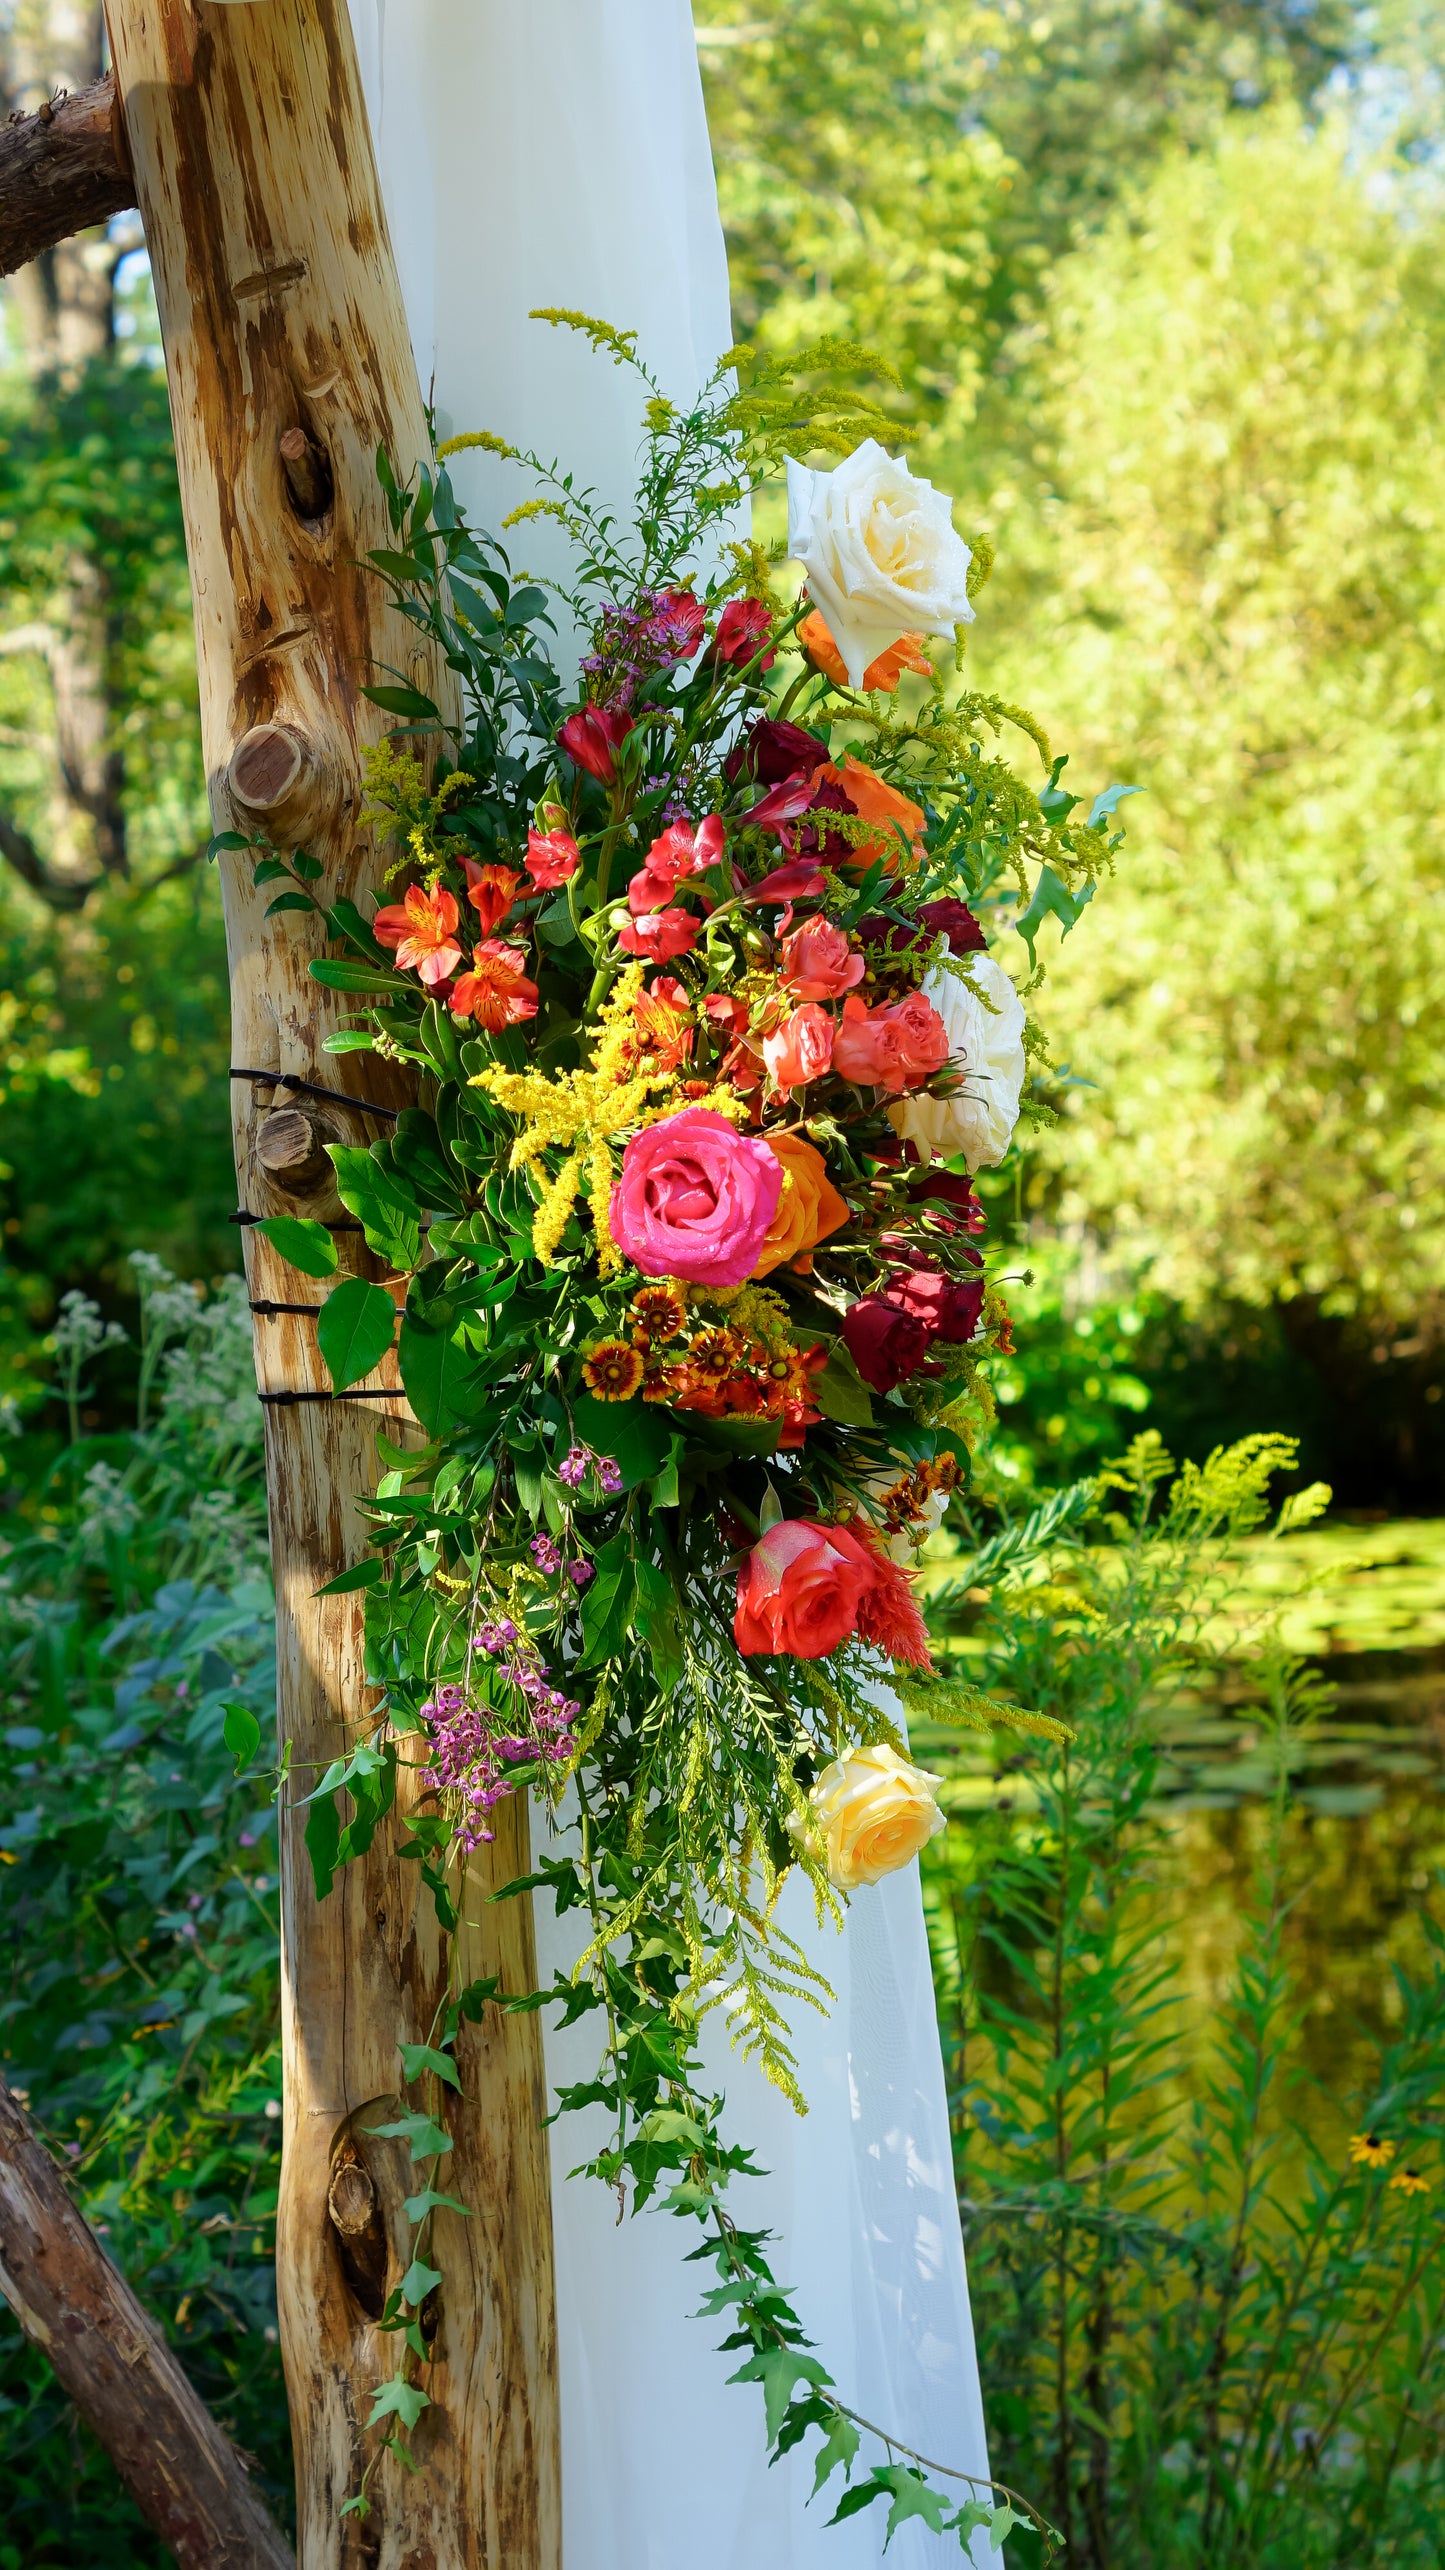 DIY Wedding Floral Design Workshop